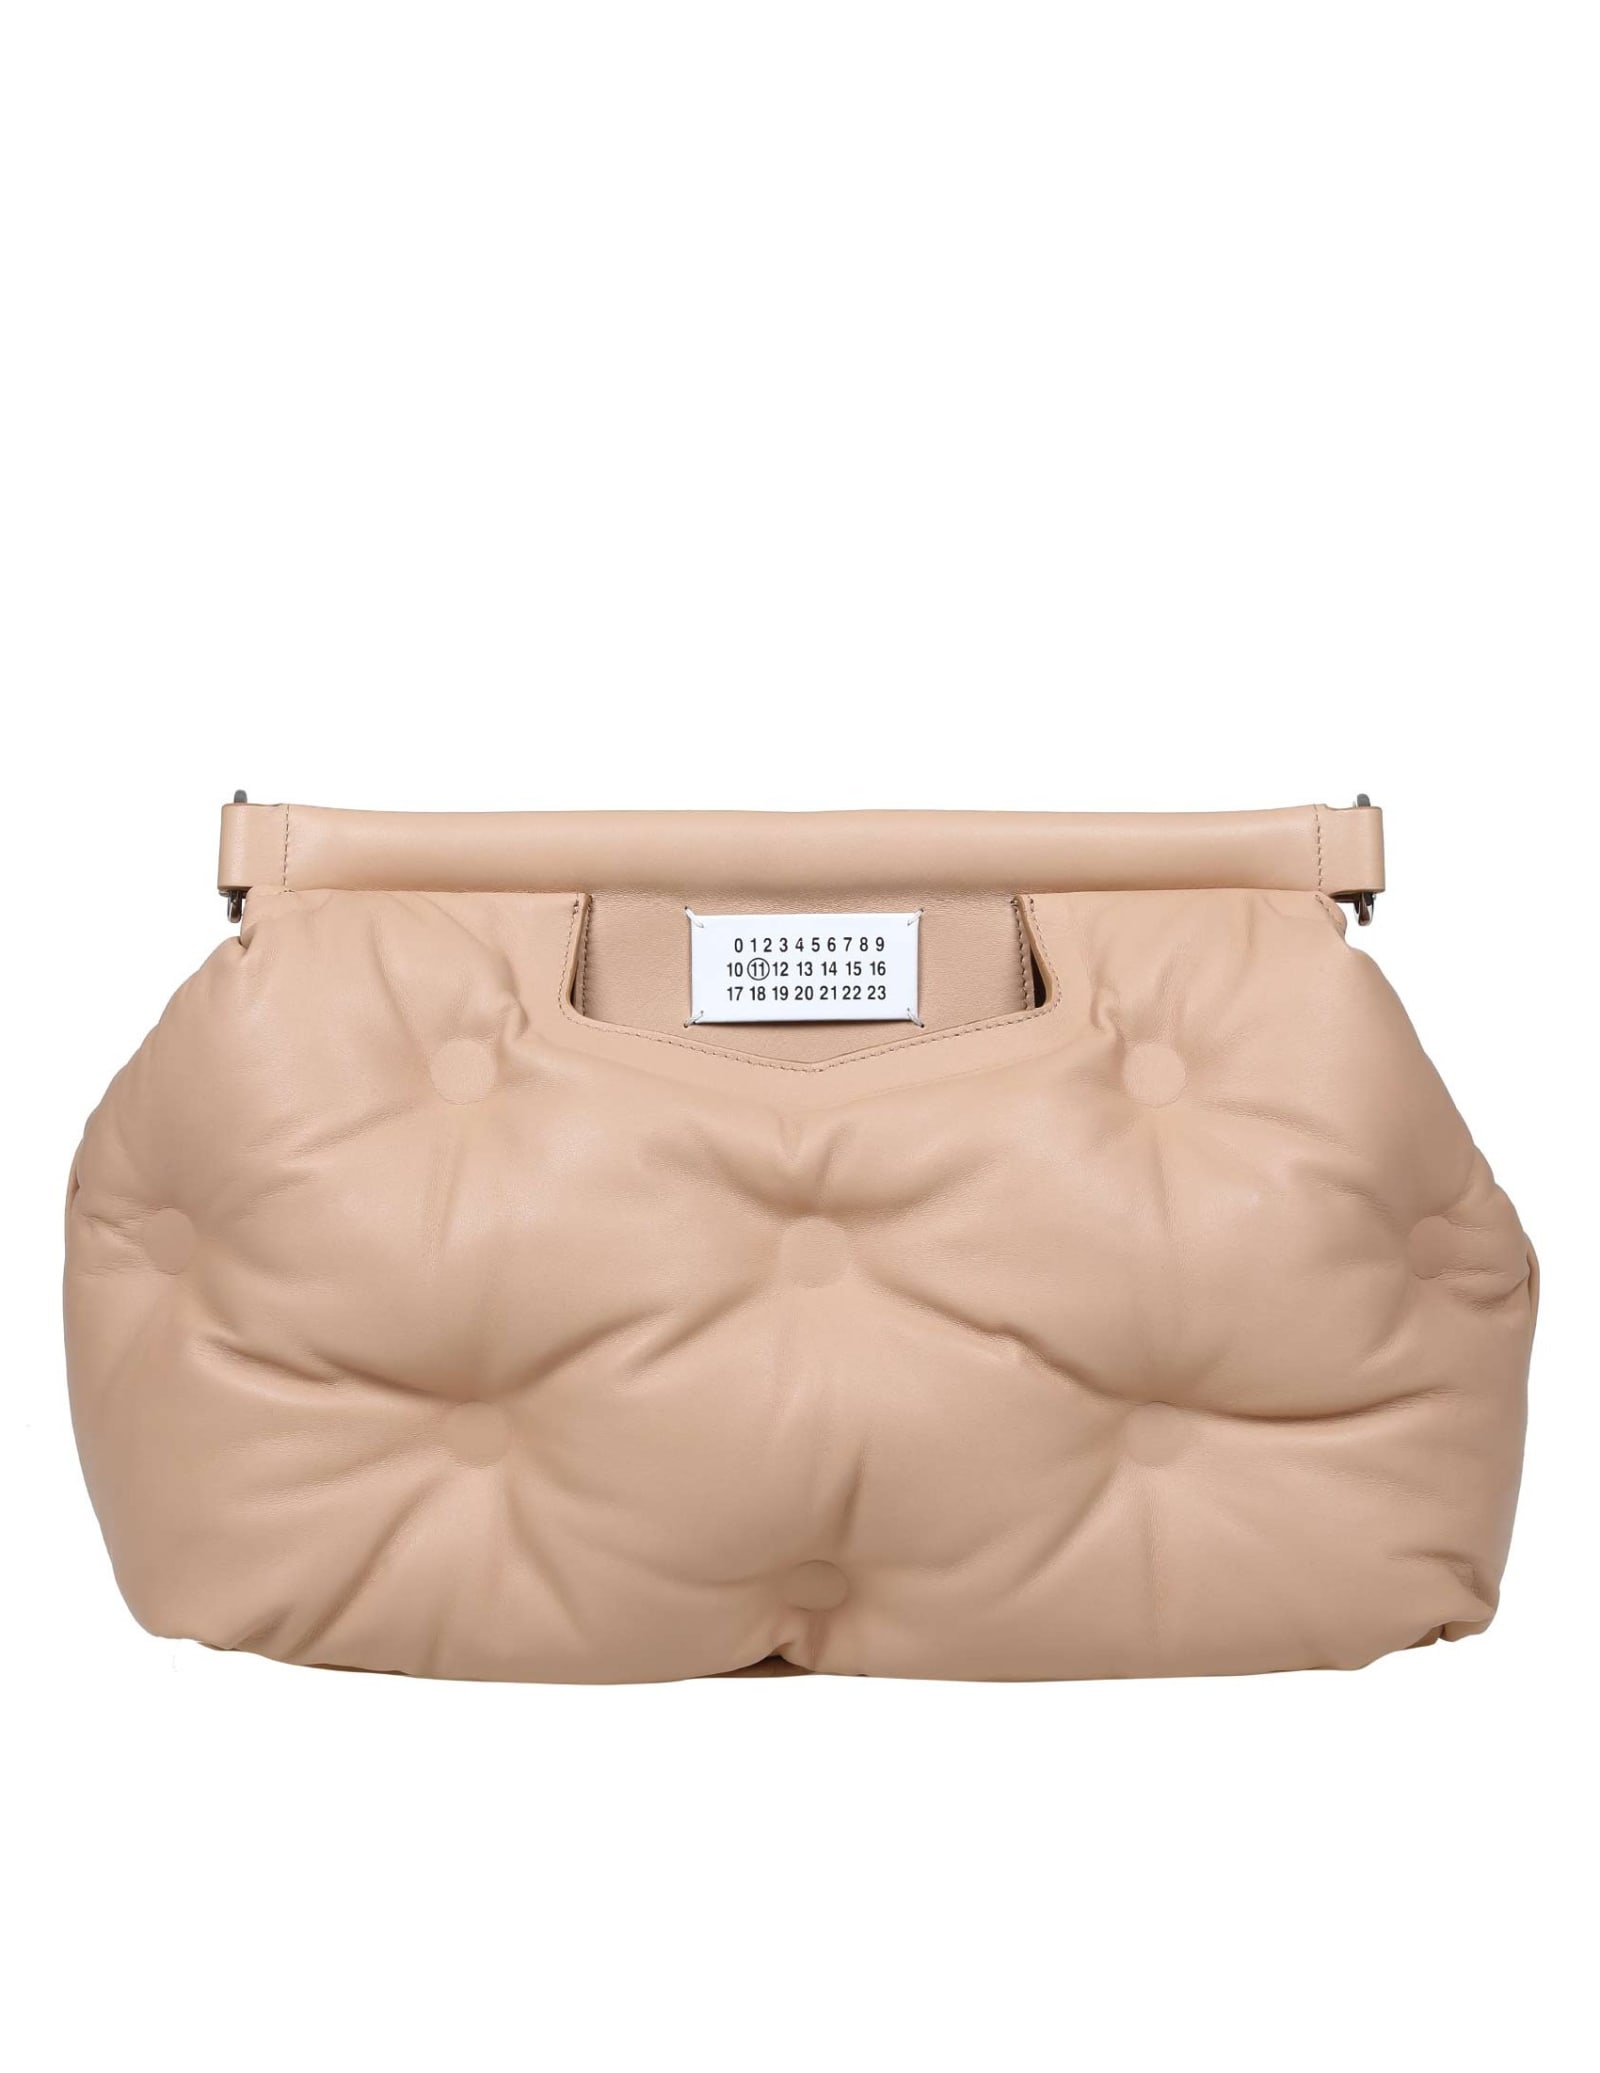 Maison Margiela Glam Slam Handbag In Soft Leather